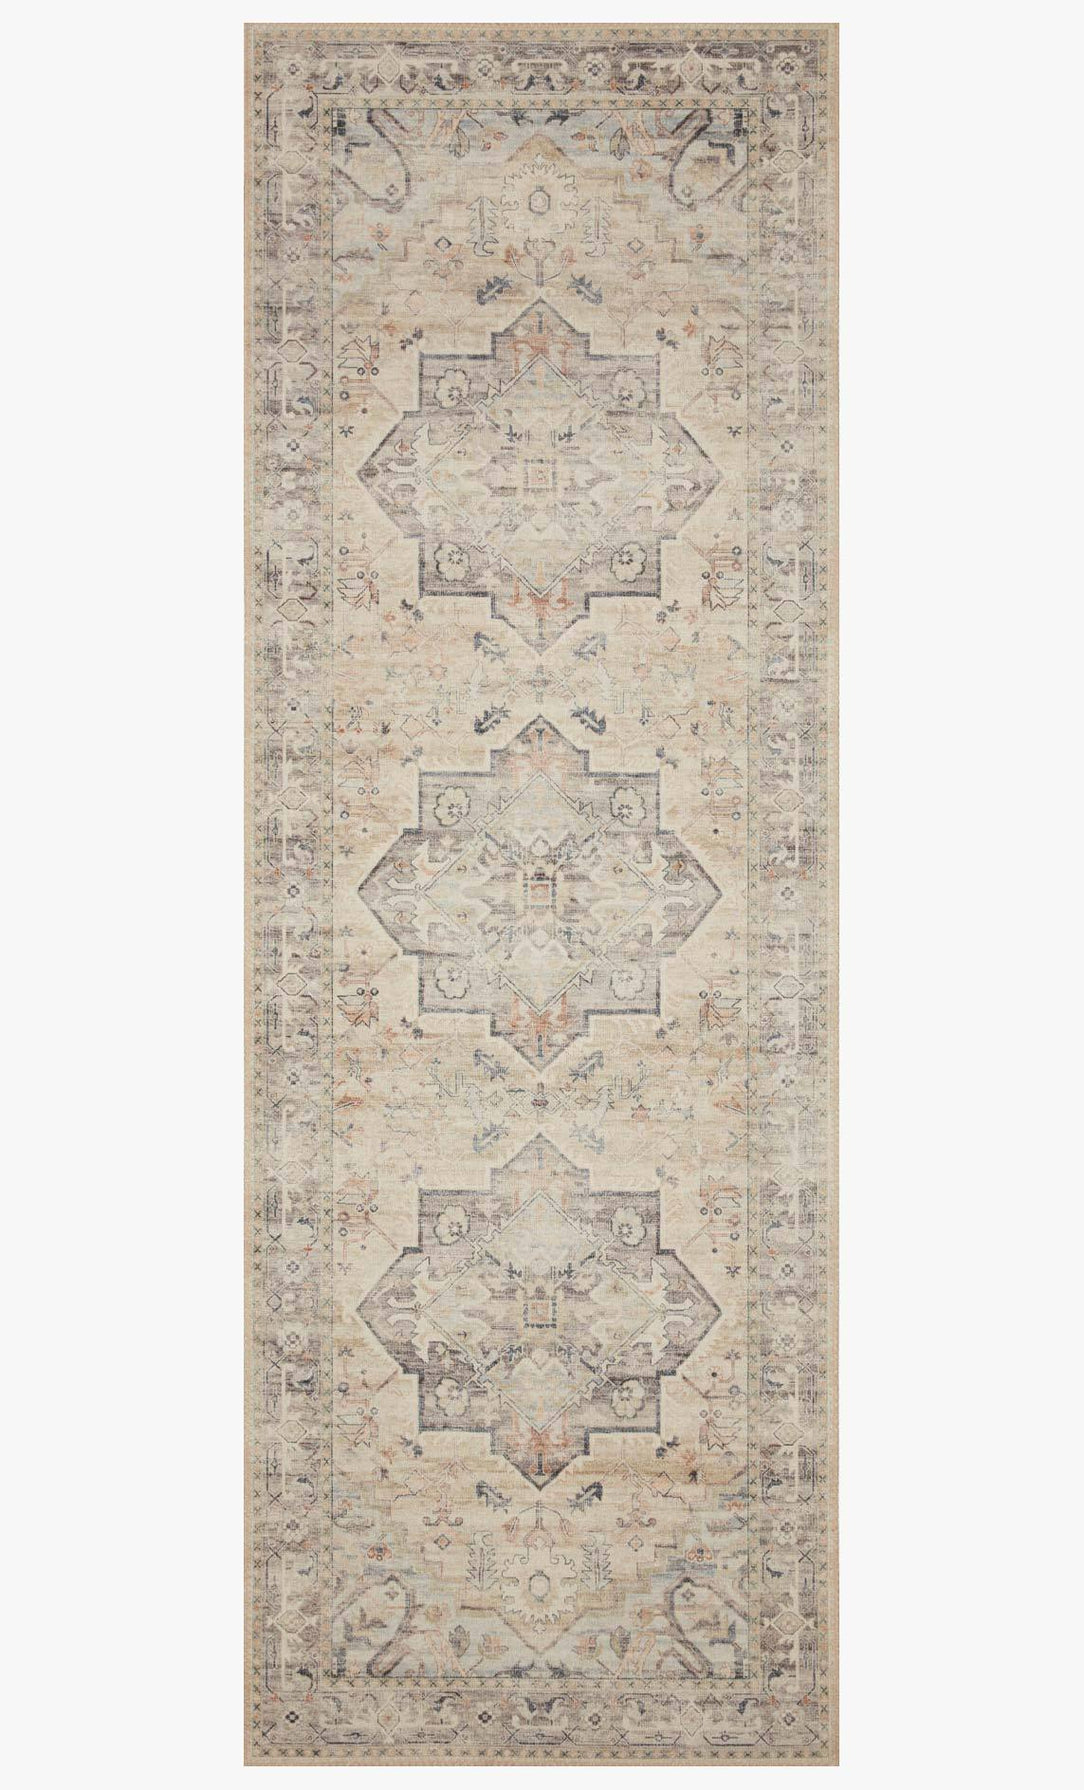 Anne Moss/Light rug